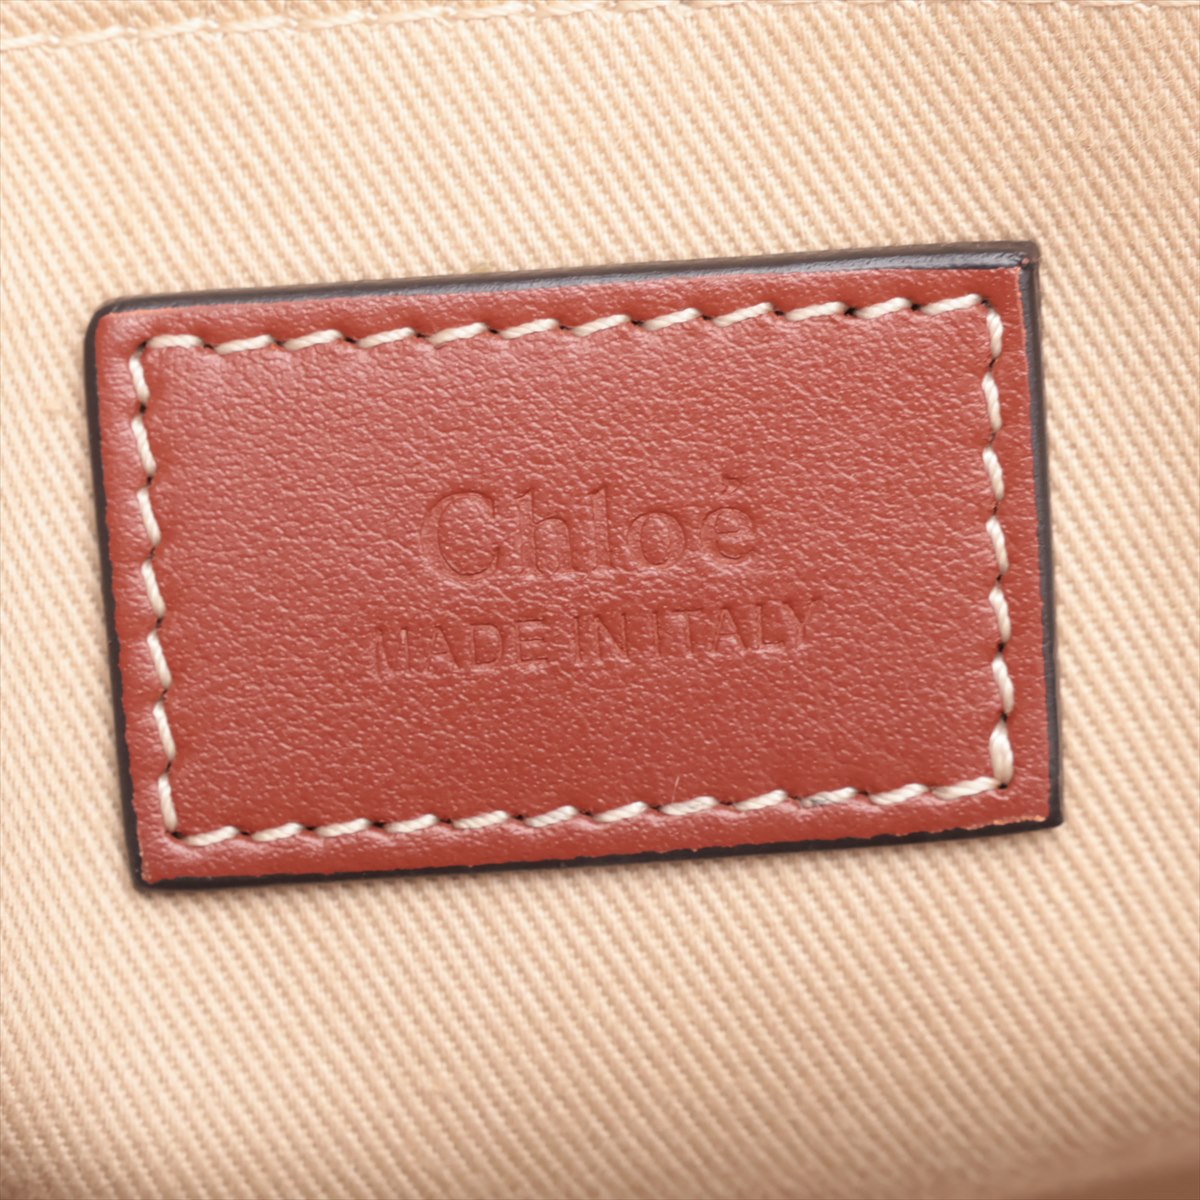 Chloe Woody Medium Canvas  Leather Tote Bag Brown